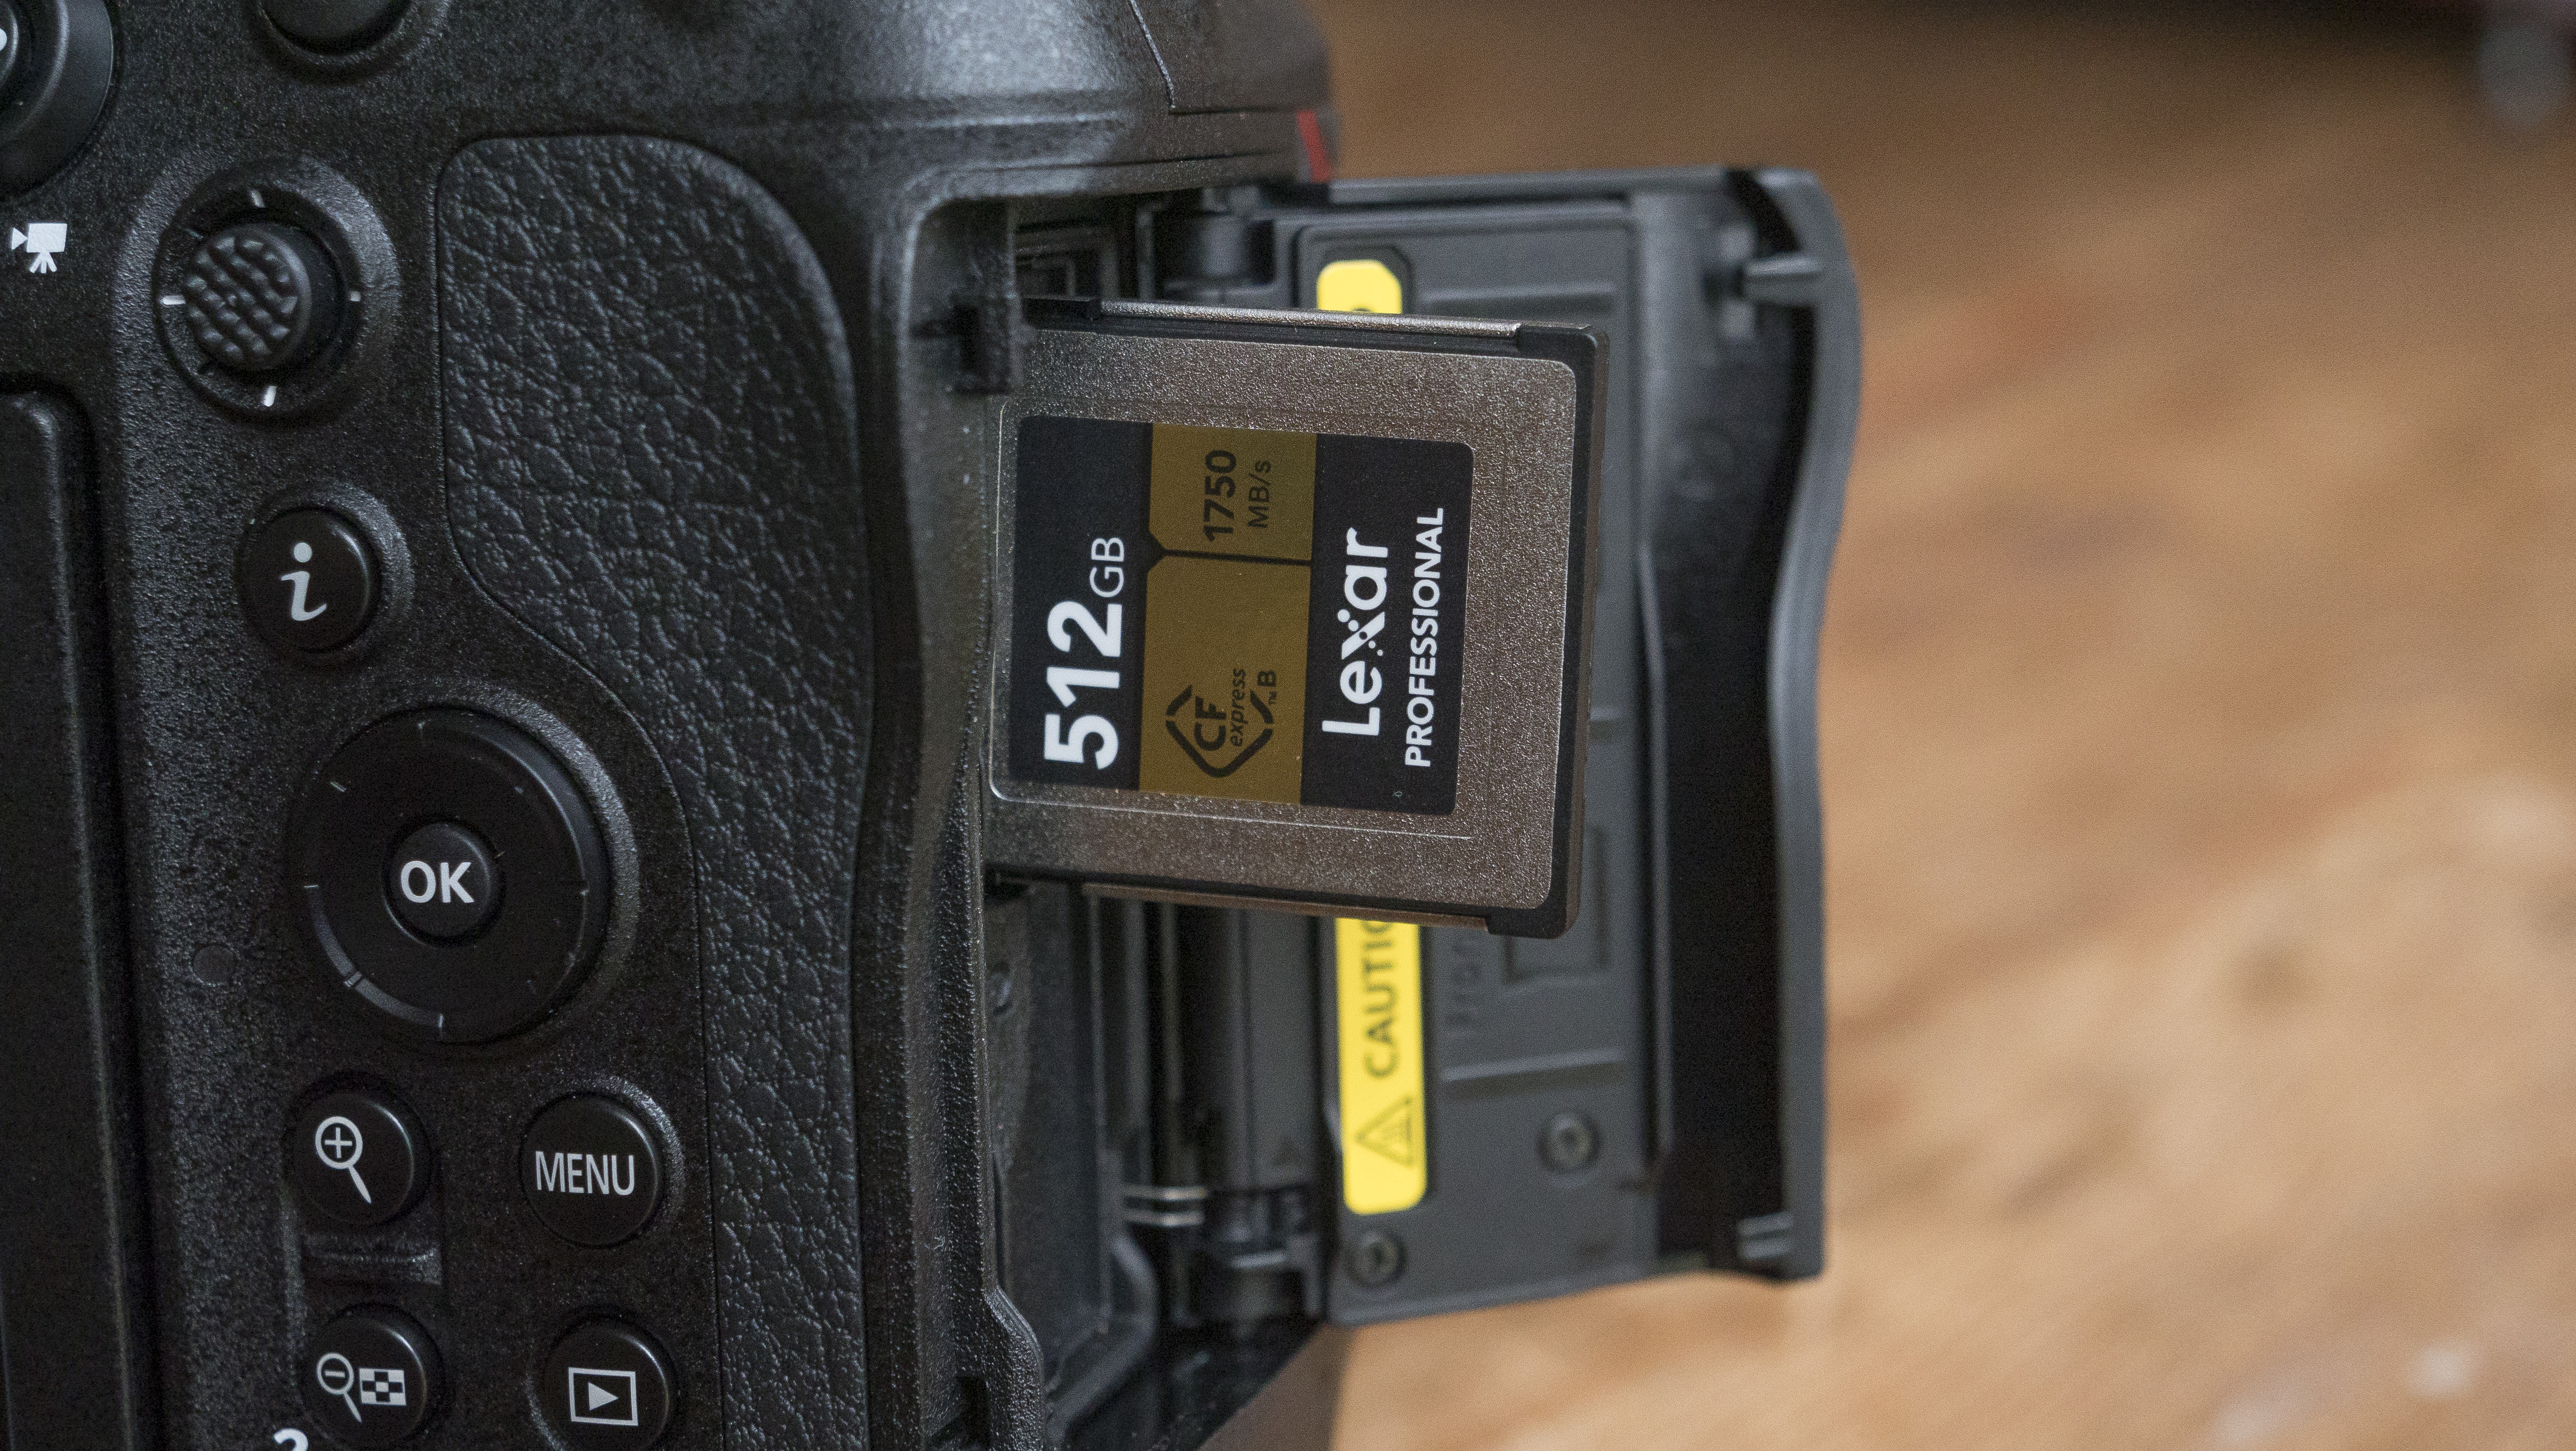 The Nikon Z9 camera's memory card slot